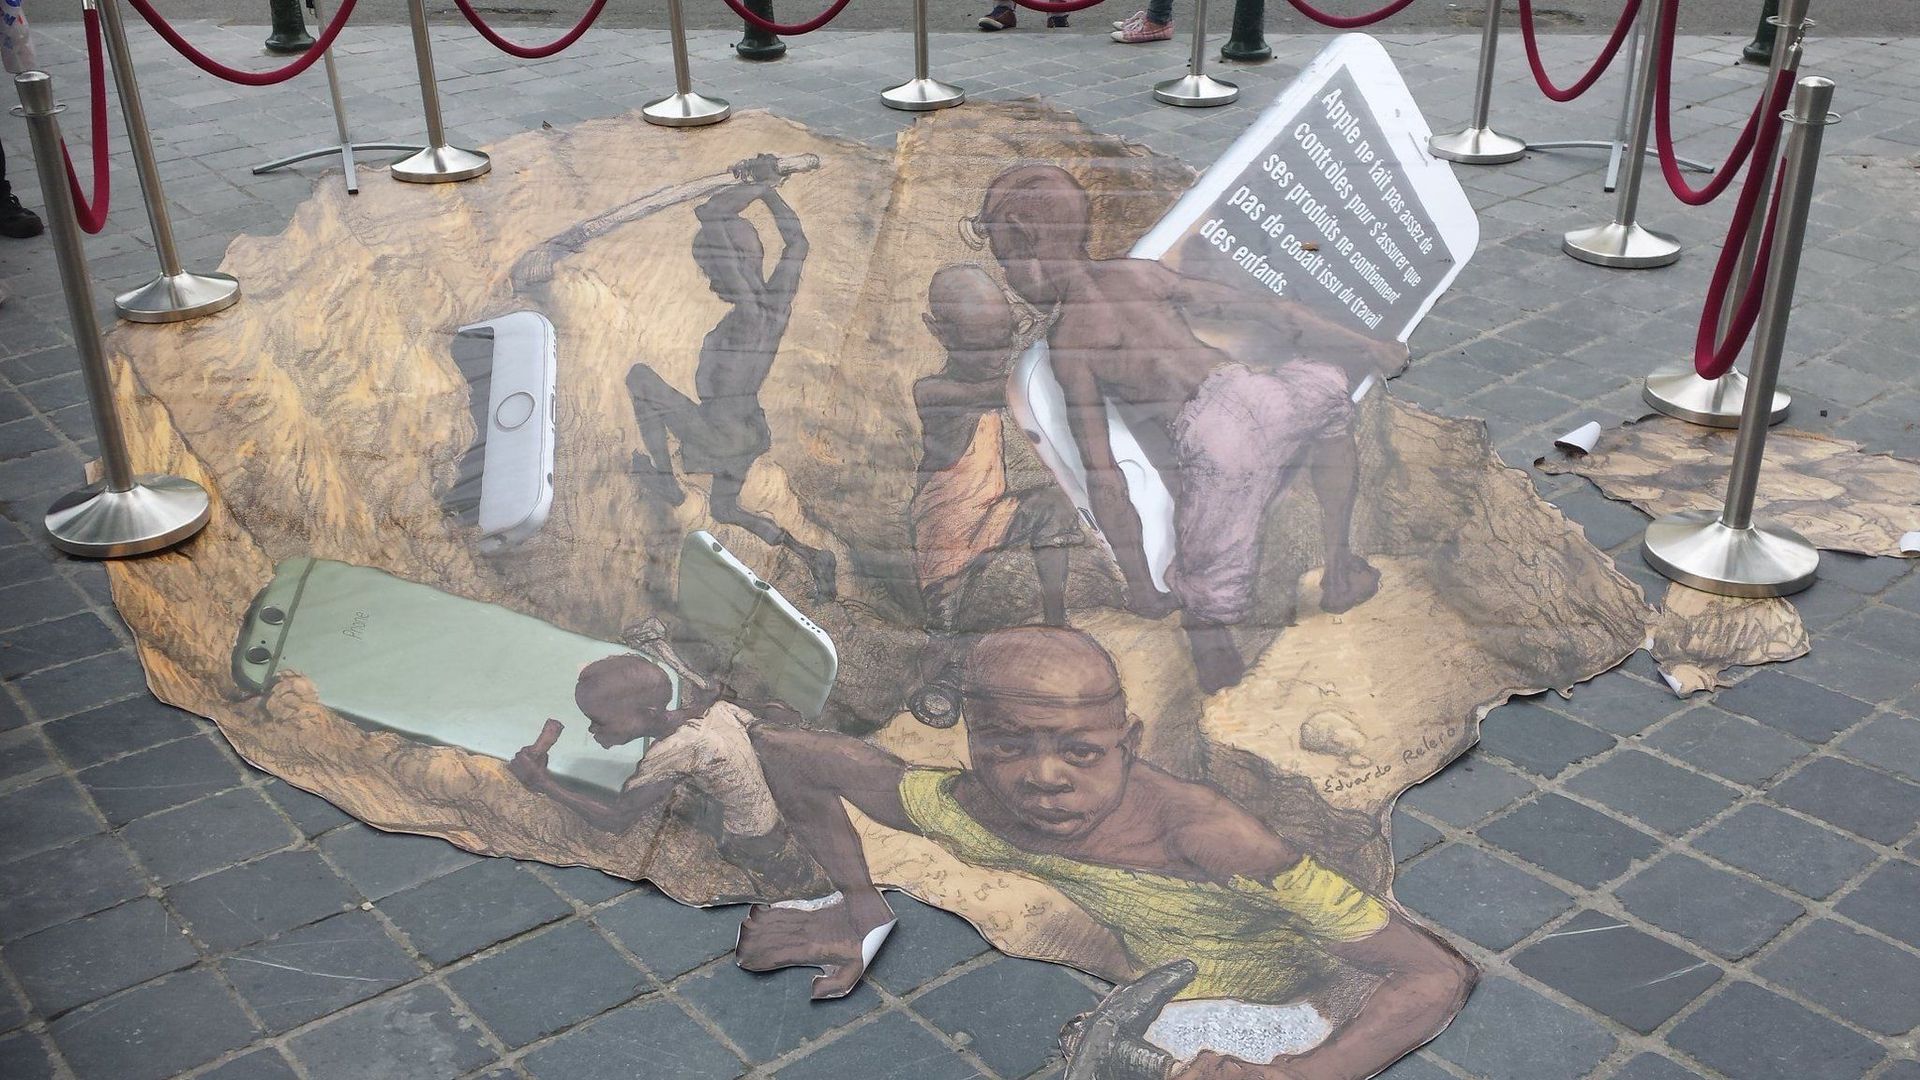 Amnesty déploie une dessin géant devant Apple pour dénoncer le travail des enfants